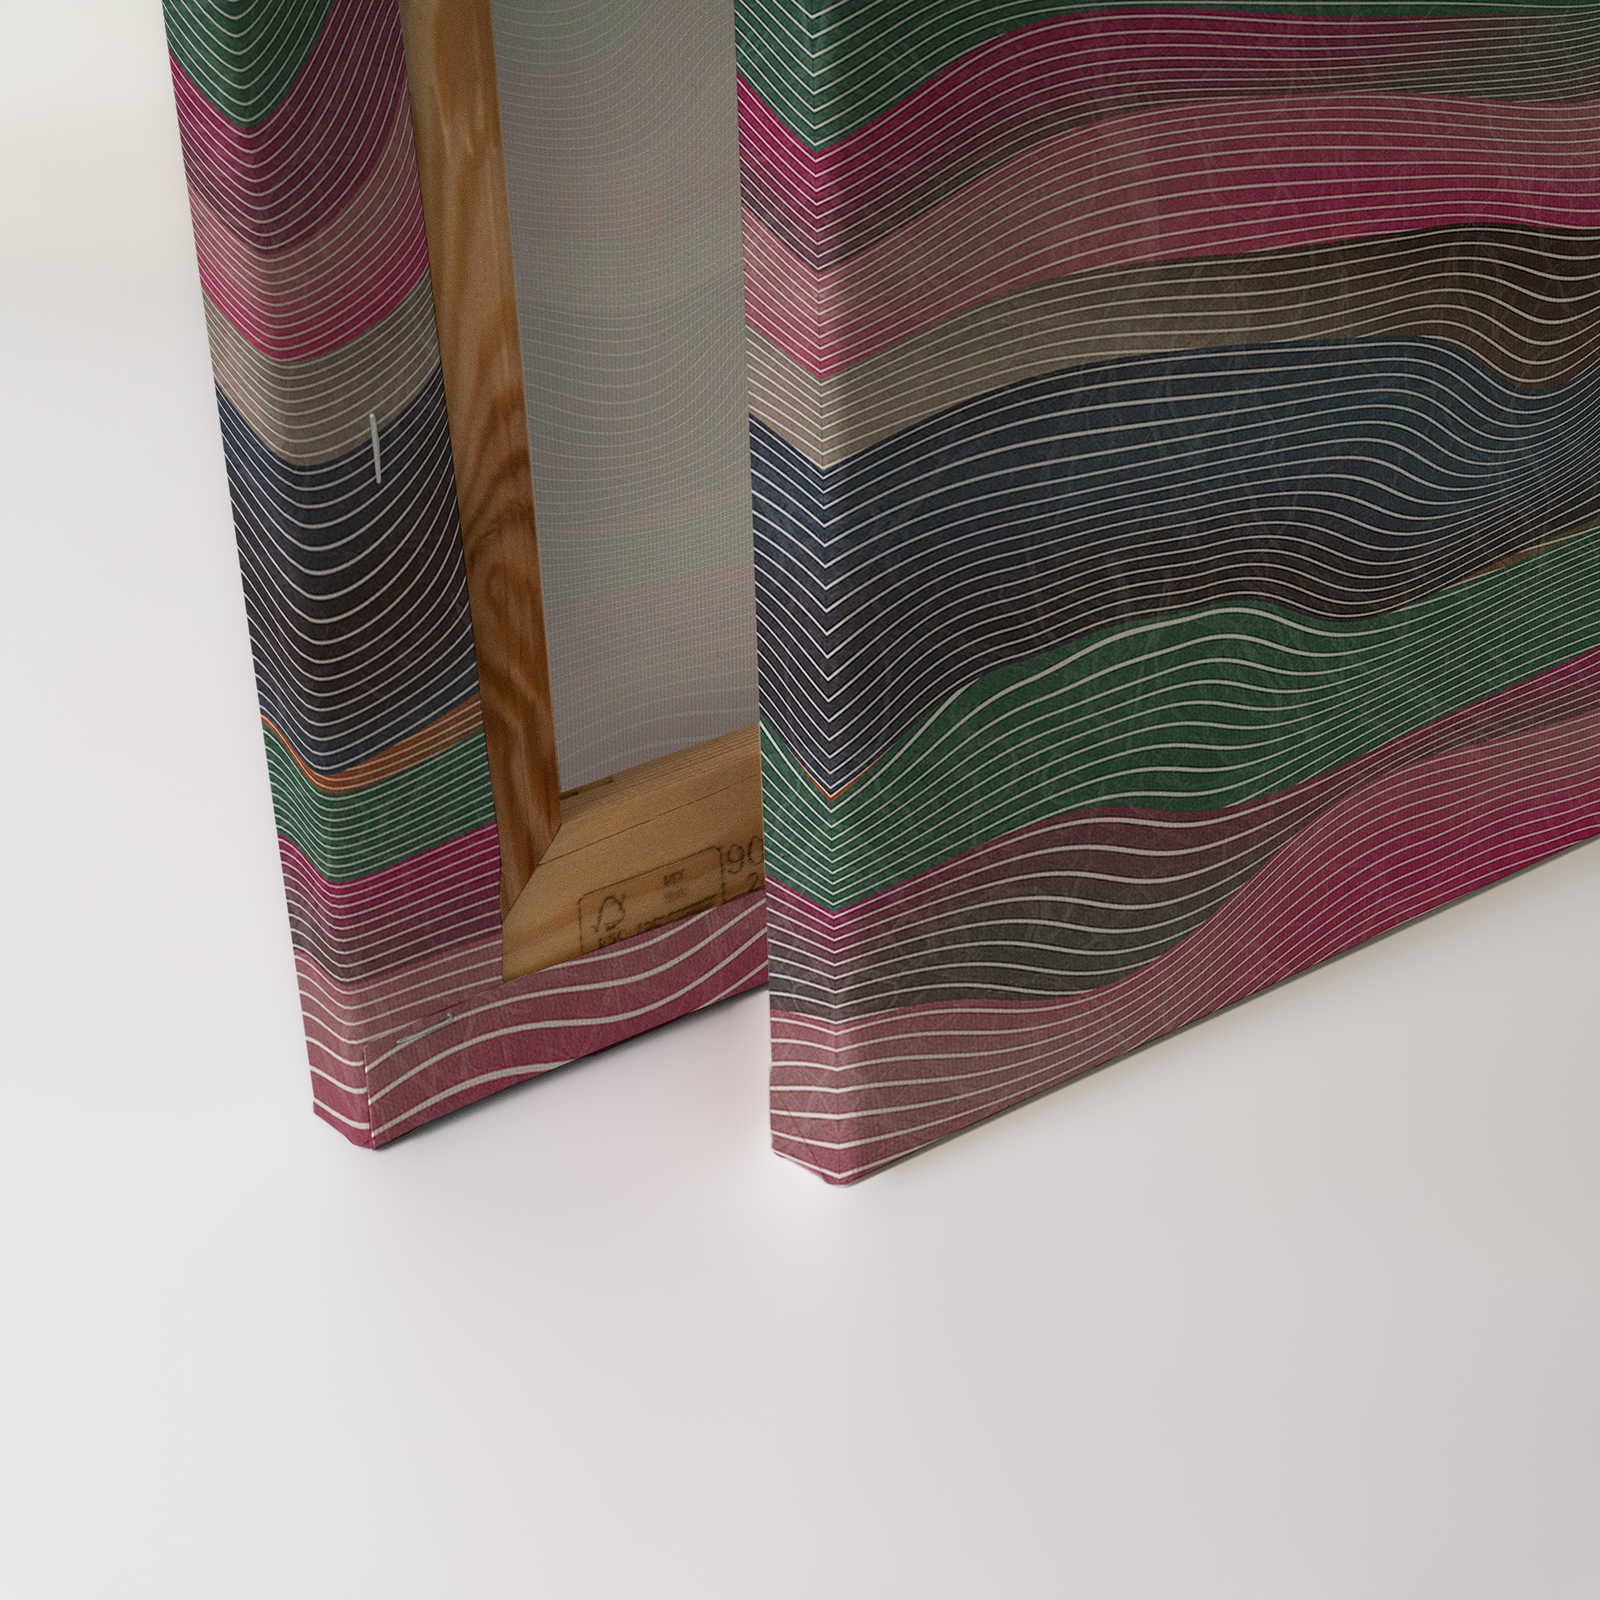             Space 1 - Toile motif vagues rose & vert style rétro - 0,90 m x 0,60 m
        